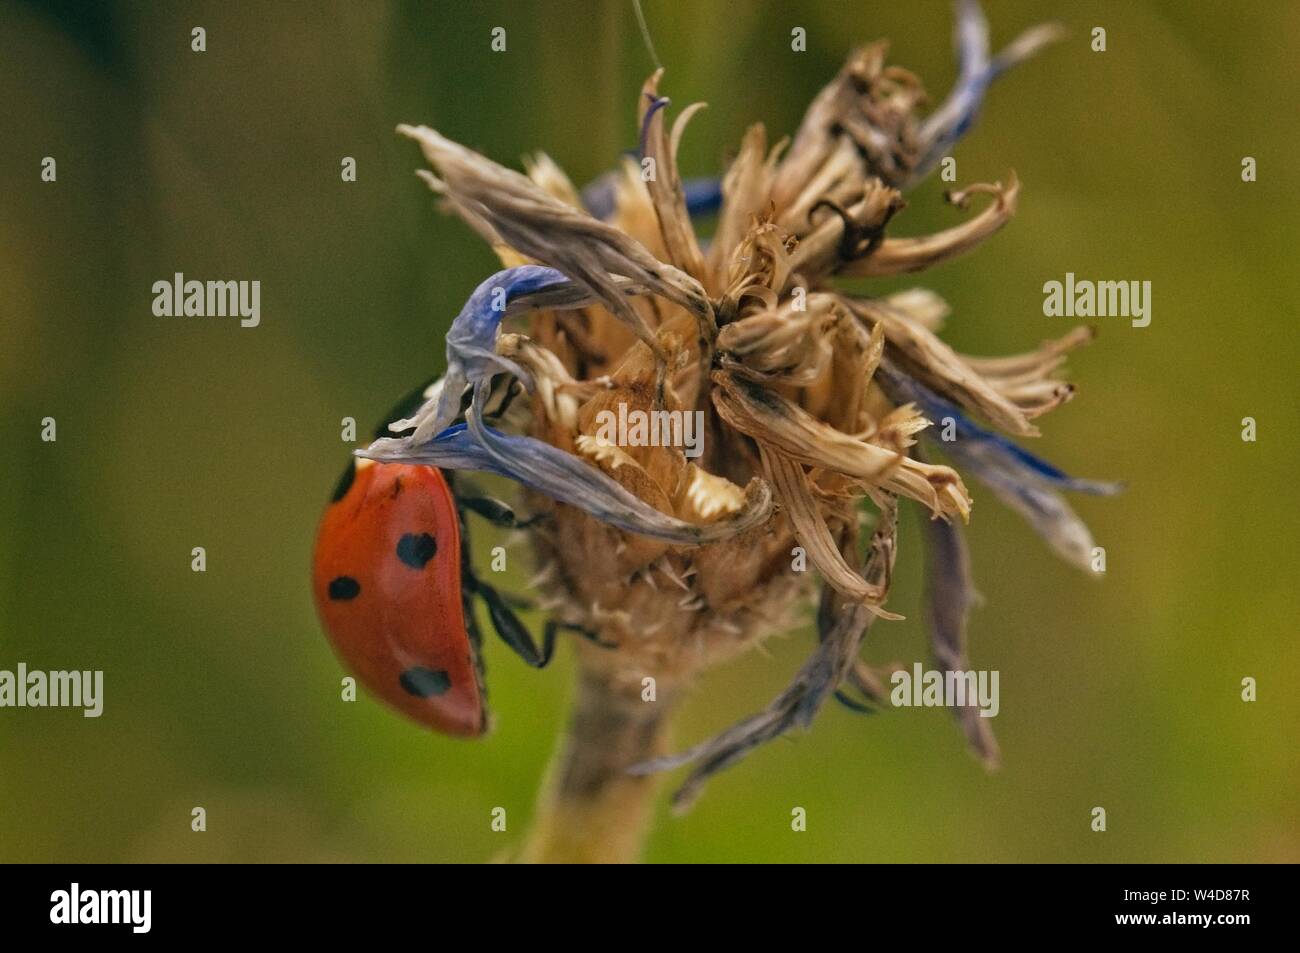 ladybug close up on flower Stock Photo